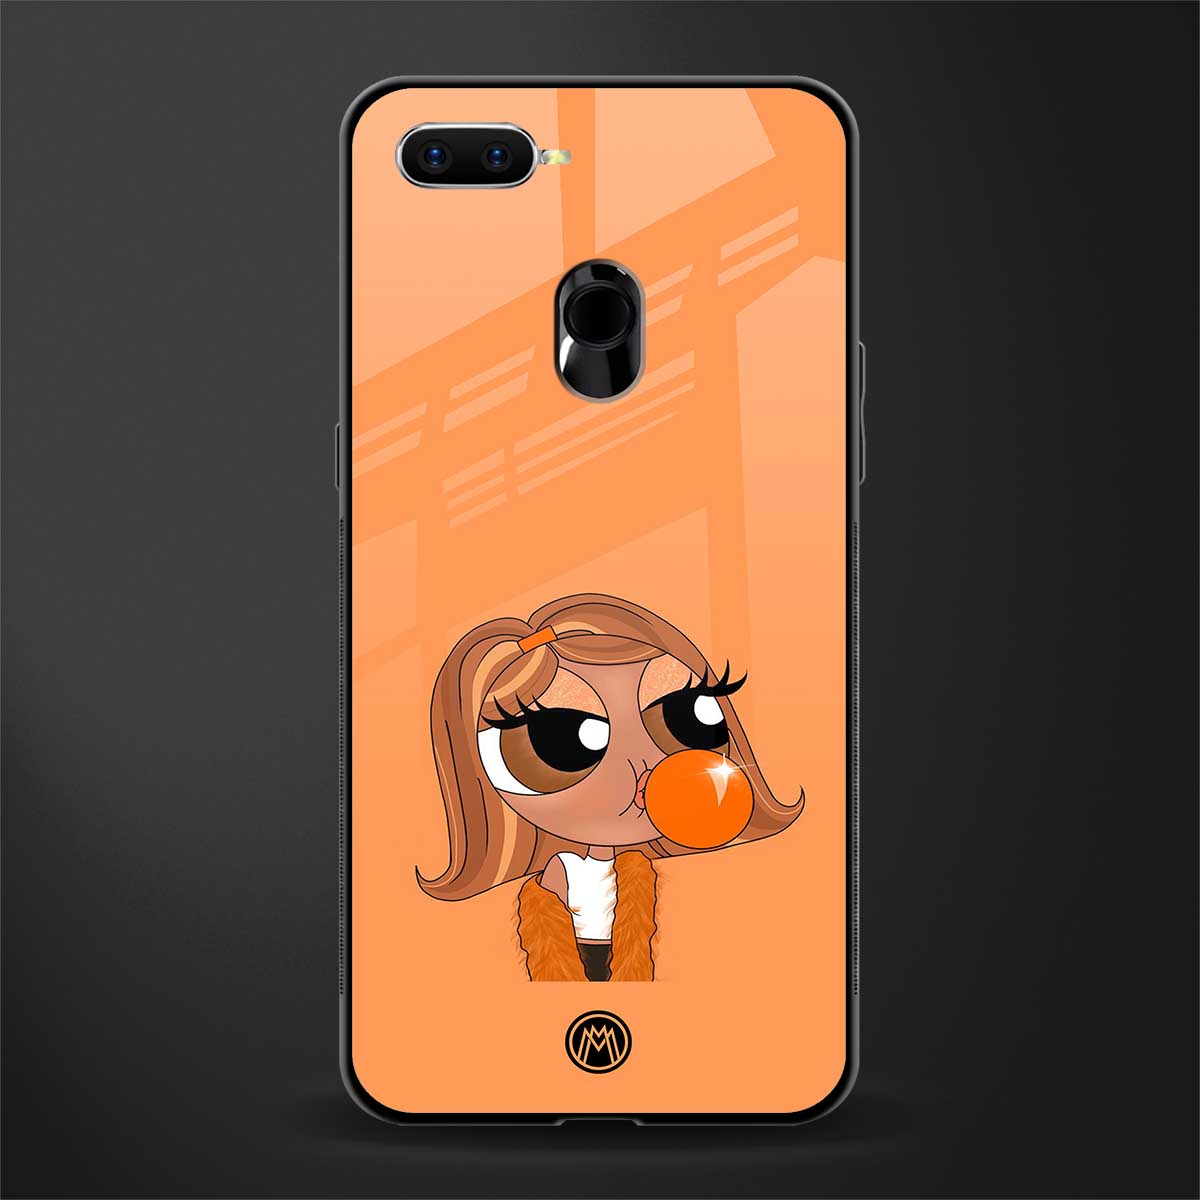 orange tote powerpuff girl glass case for realme 2 pro image